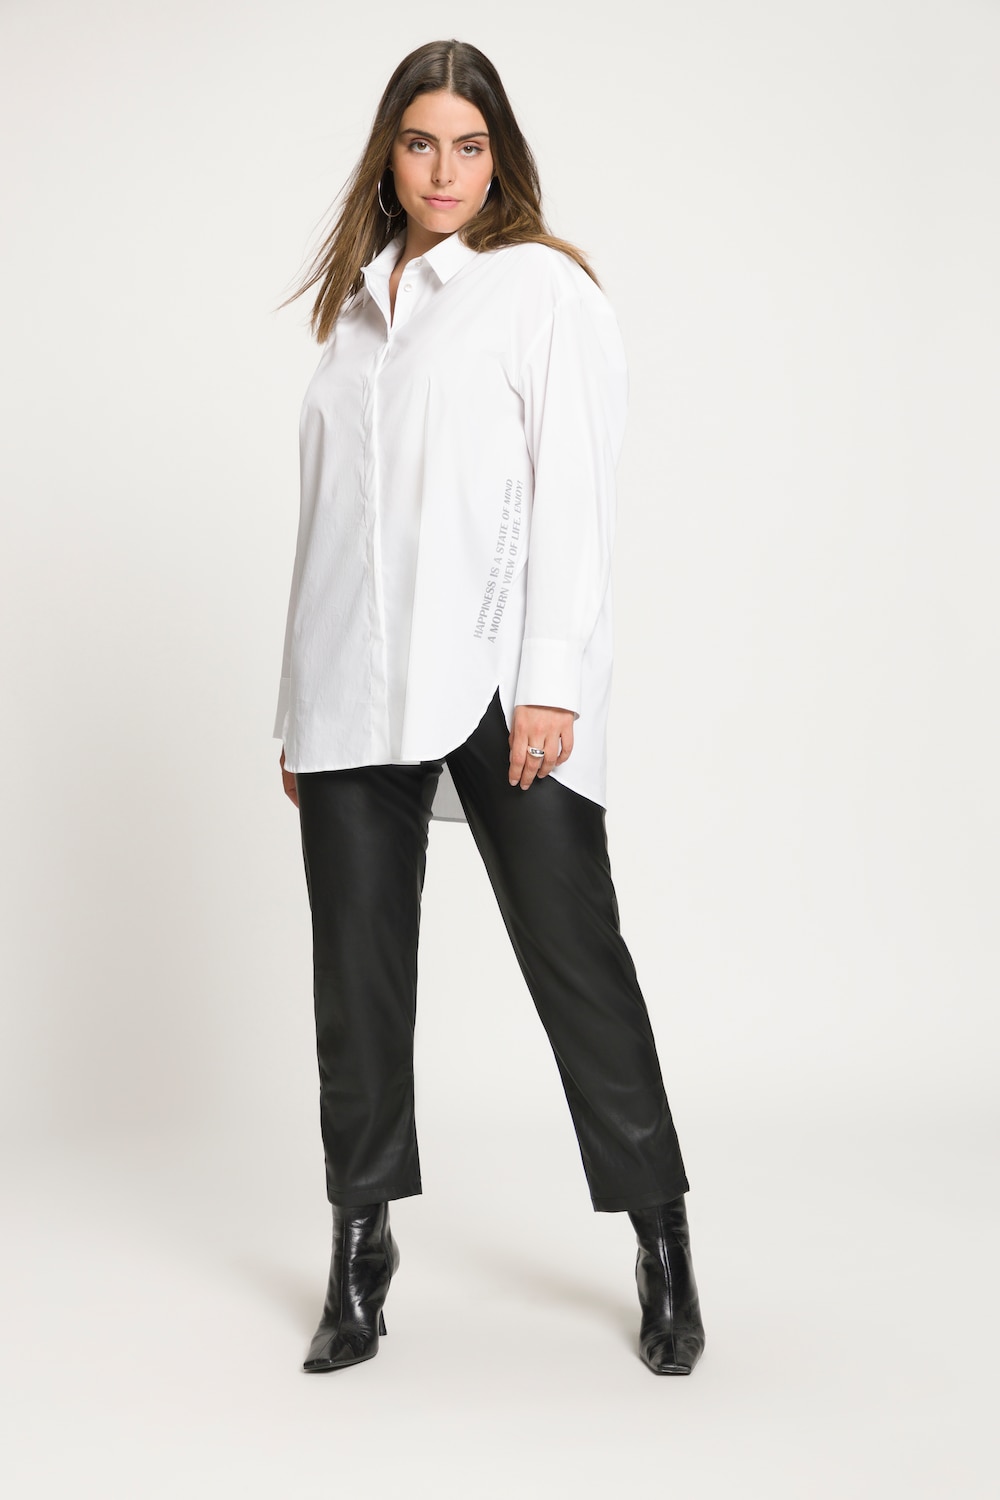 Grote Maten blouse, Dames, wit, Maat: 42/44, Katoen/Synthetische vezels, Ulla Popken